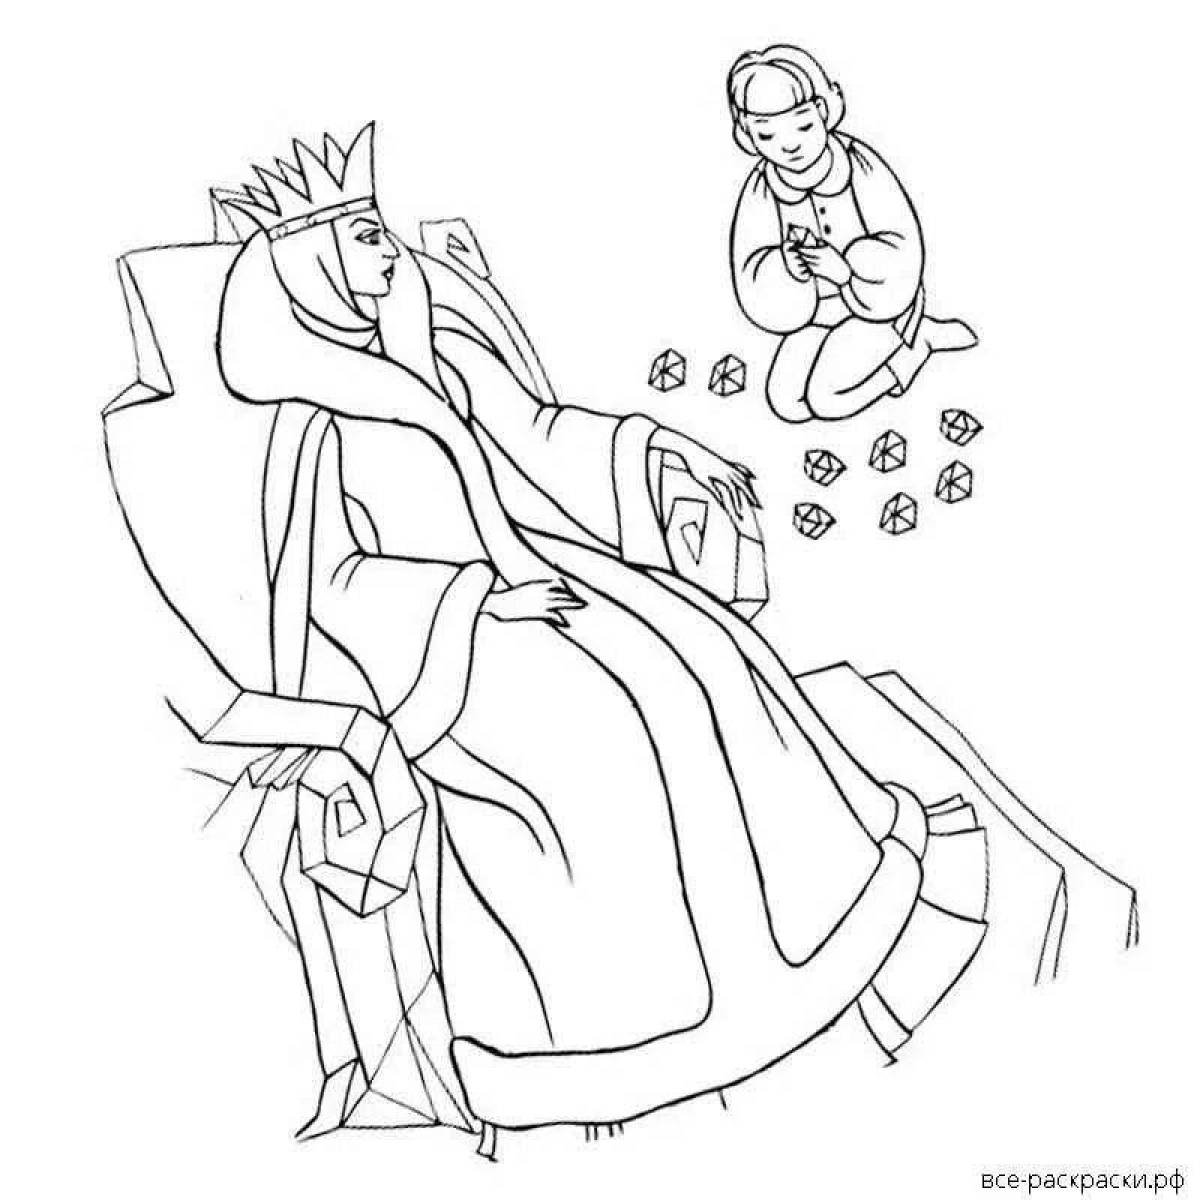 Иллюстрация к снежной королеве 5 класс. Раскраска Снежная Королева Хранители чудес.